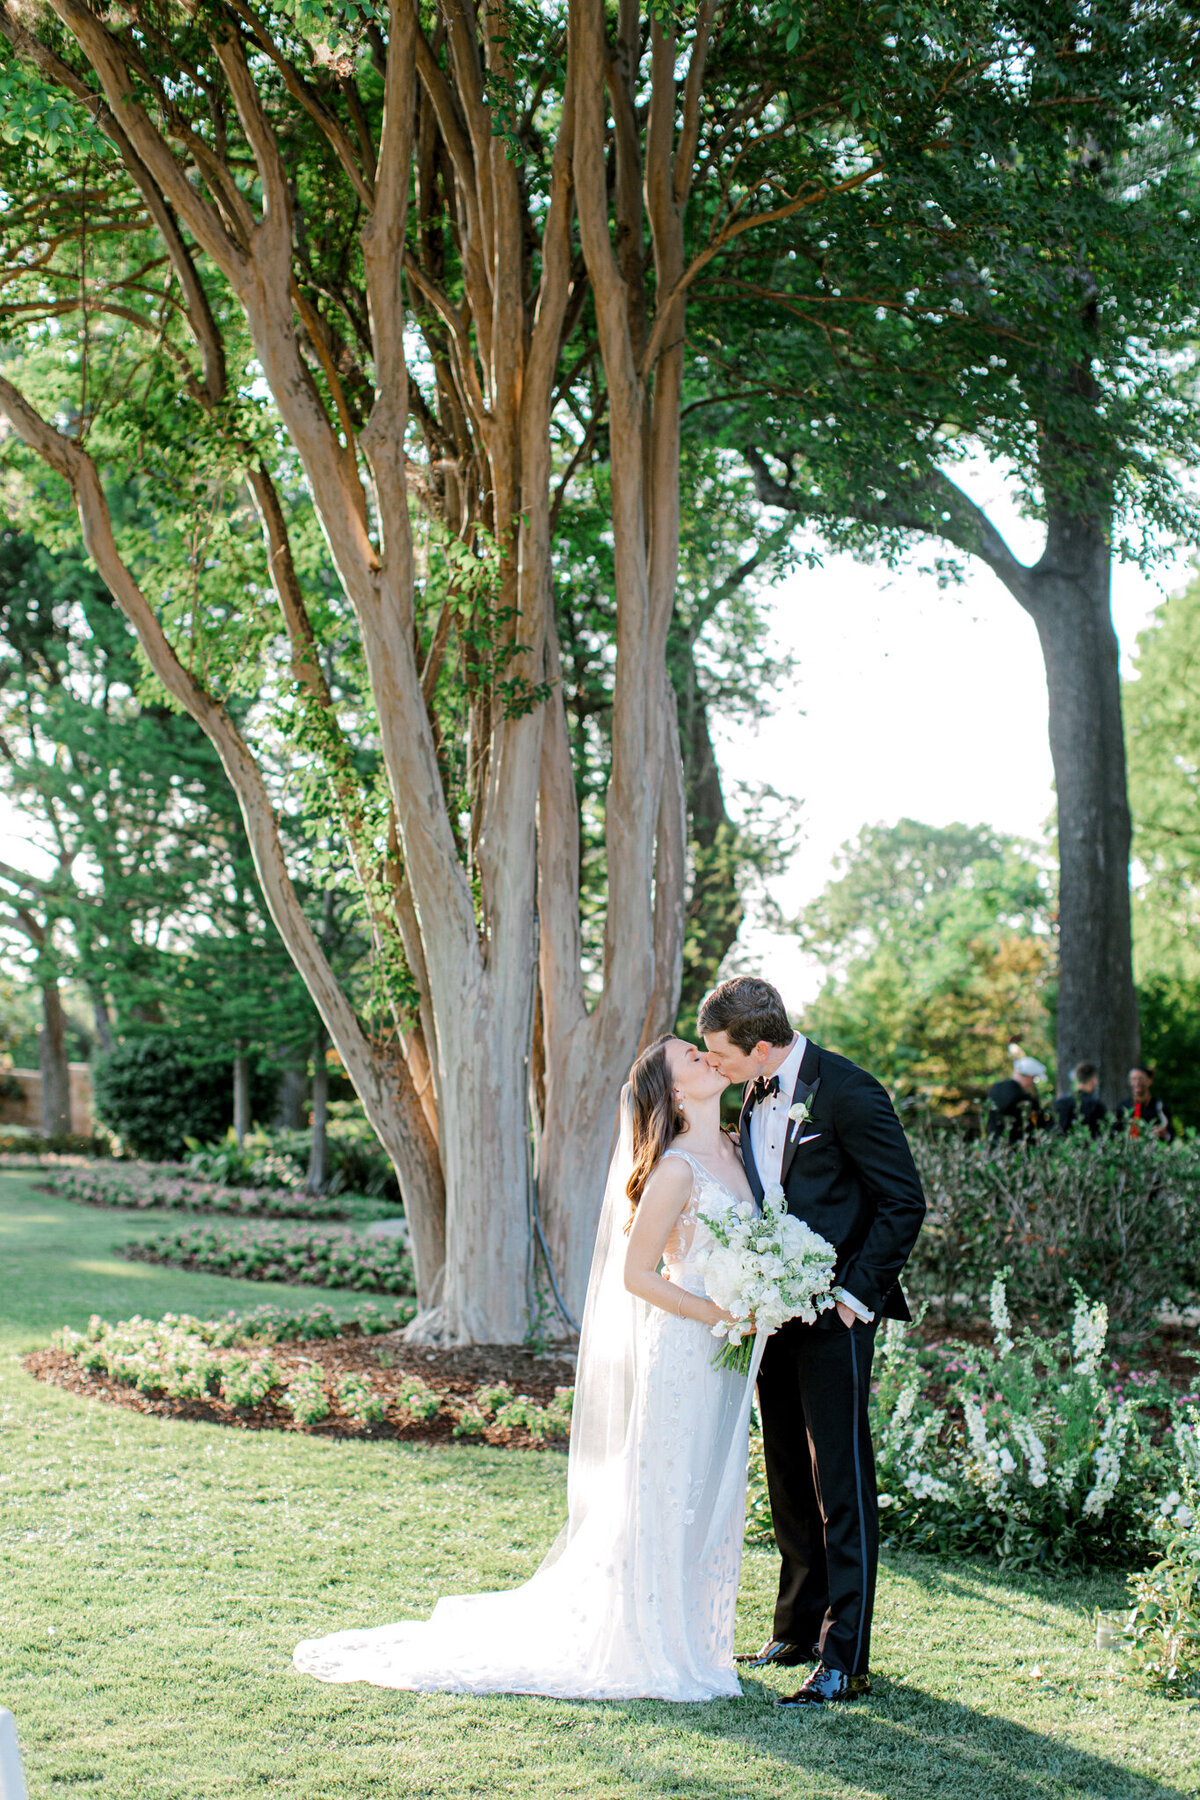 Gena & Matt's Wedding at the Dallas Arboretum | Dallas Wedding Photographer | Sami Kathryn Photography-165